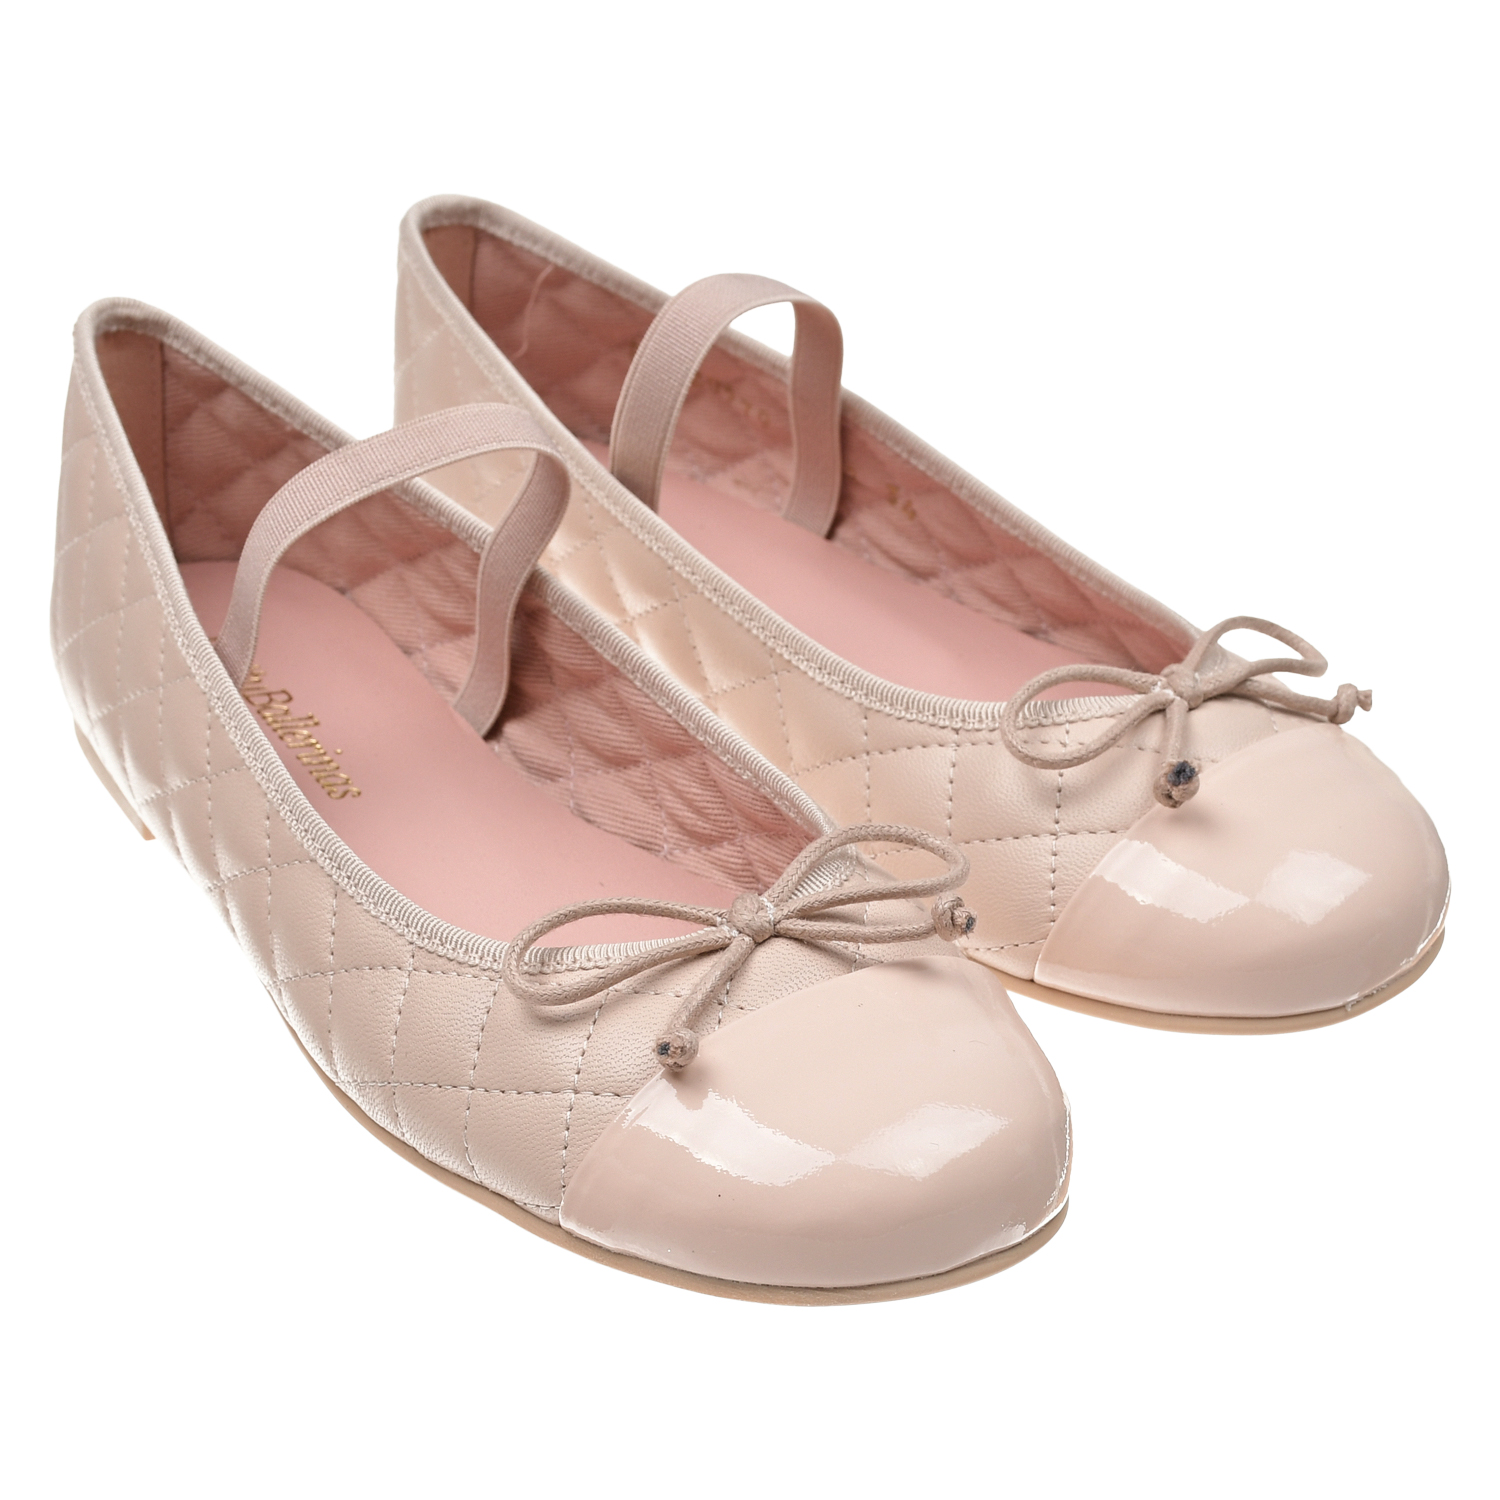 Пудровые туфли со стеганой отделкой Pretty Ballerinas золотистые туфли с цветком из страз pretty ballerinas